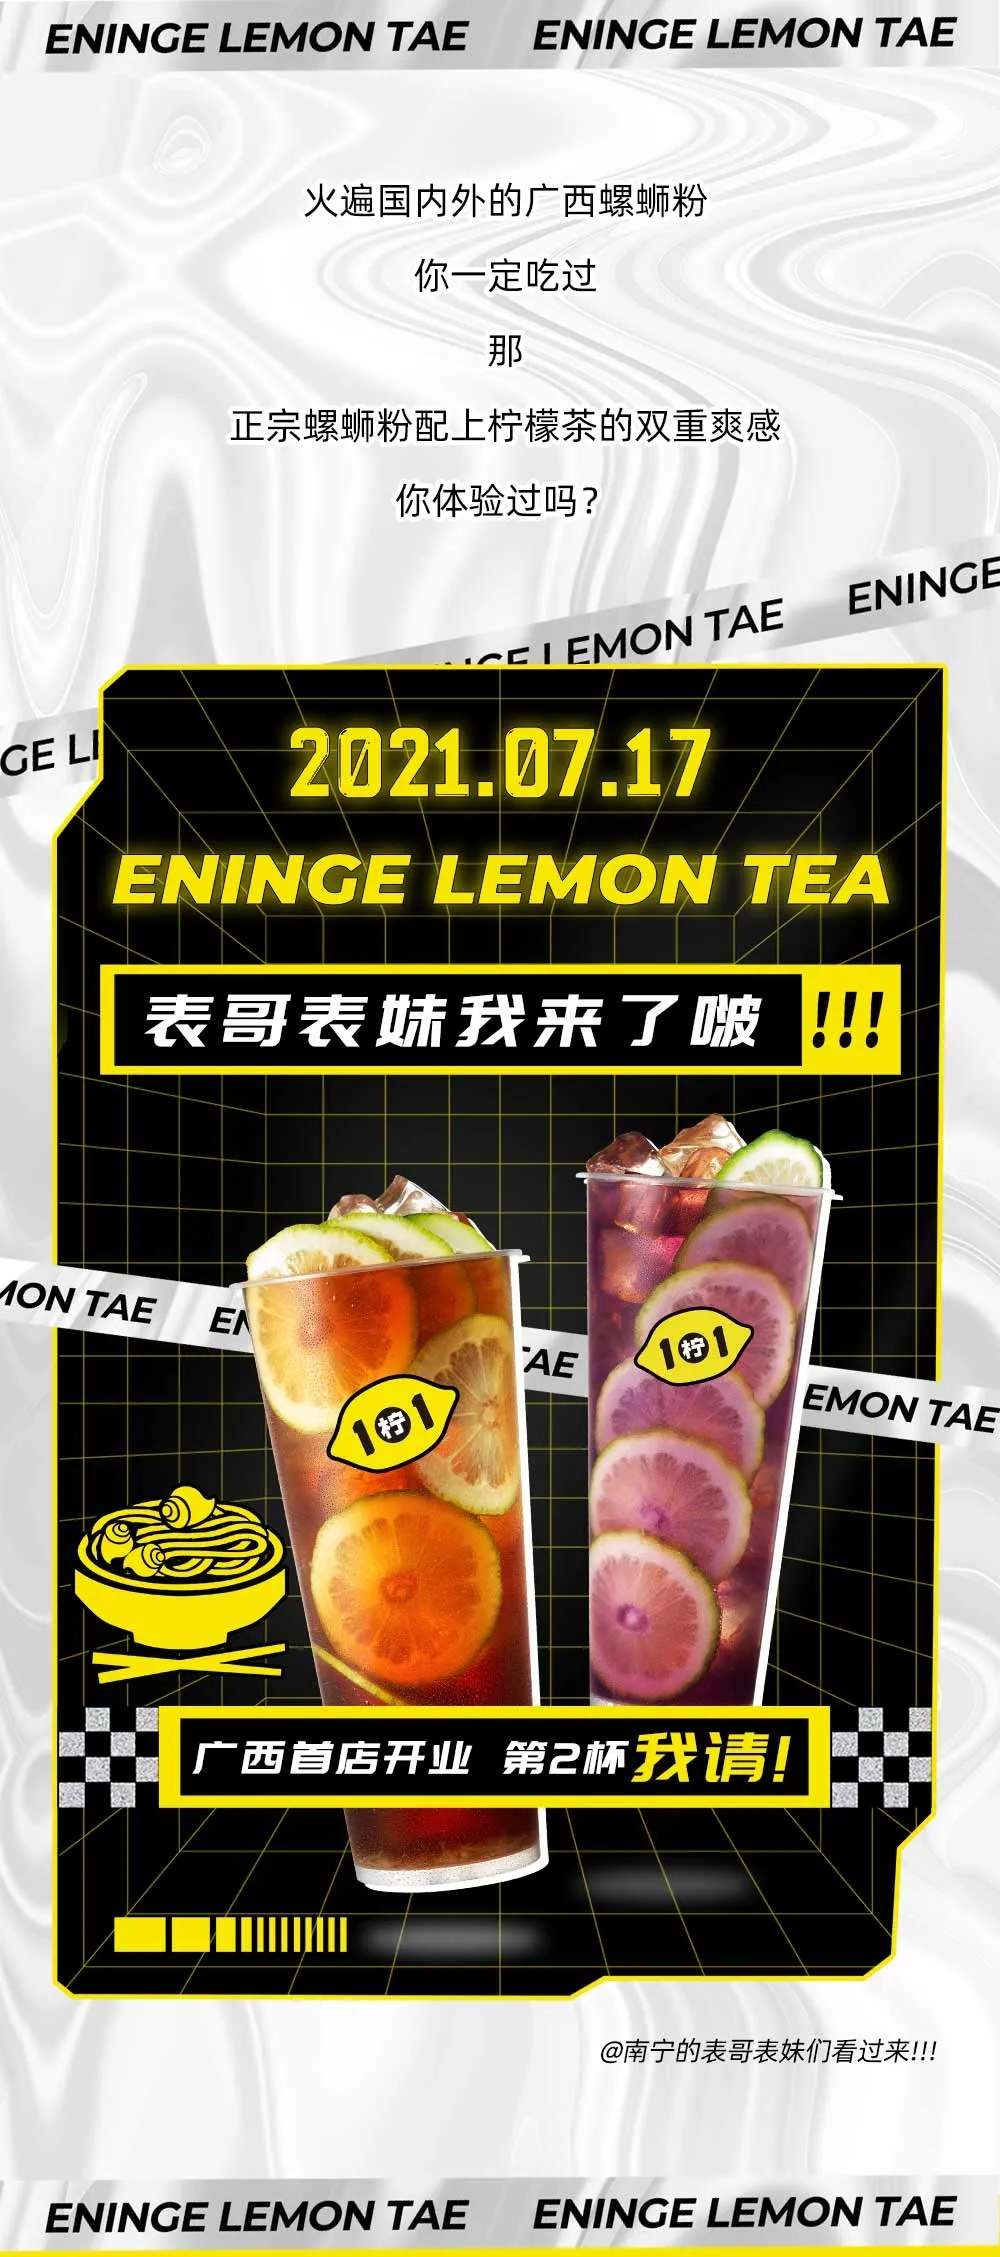 1柠1官网-广州1柠1柠檬茶加盟咨询_手打柠檬茶加盟品牌